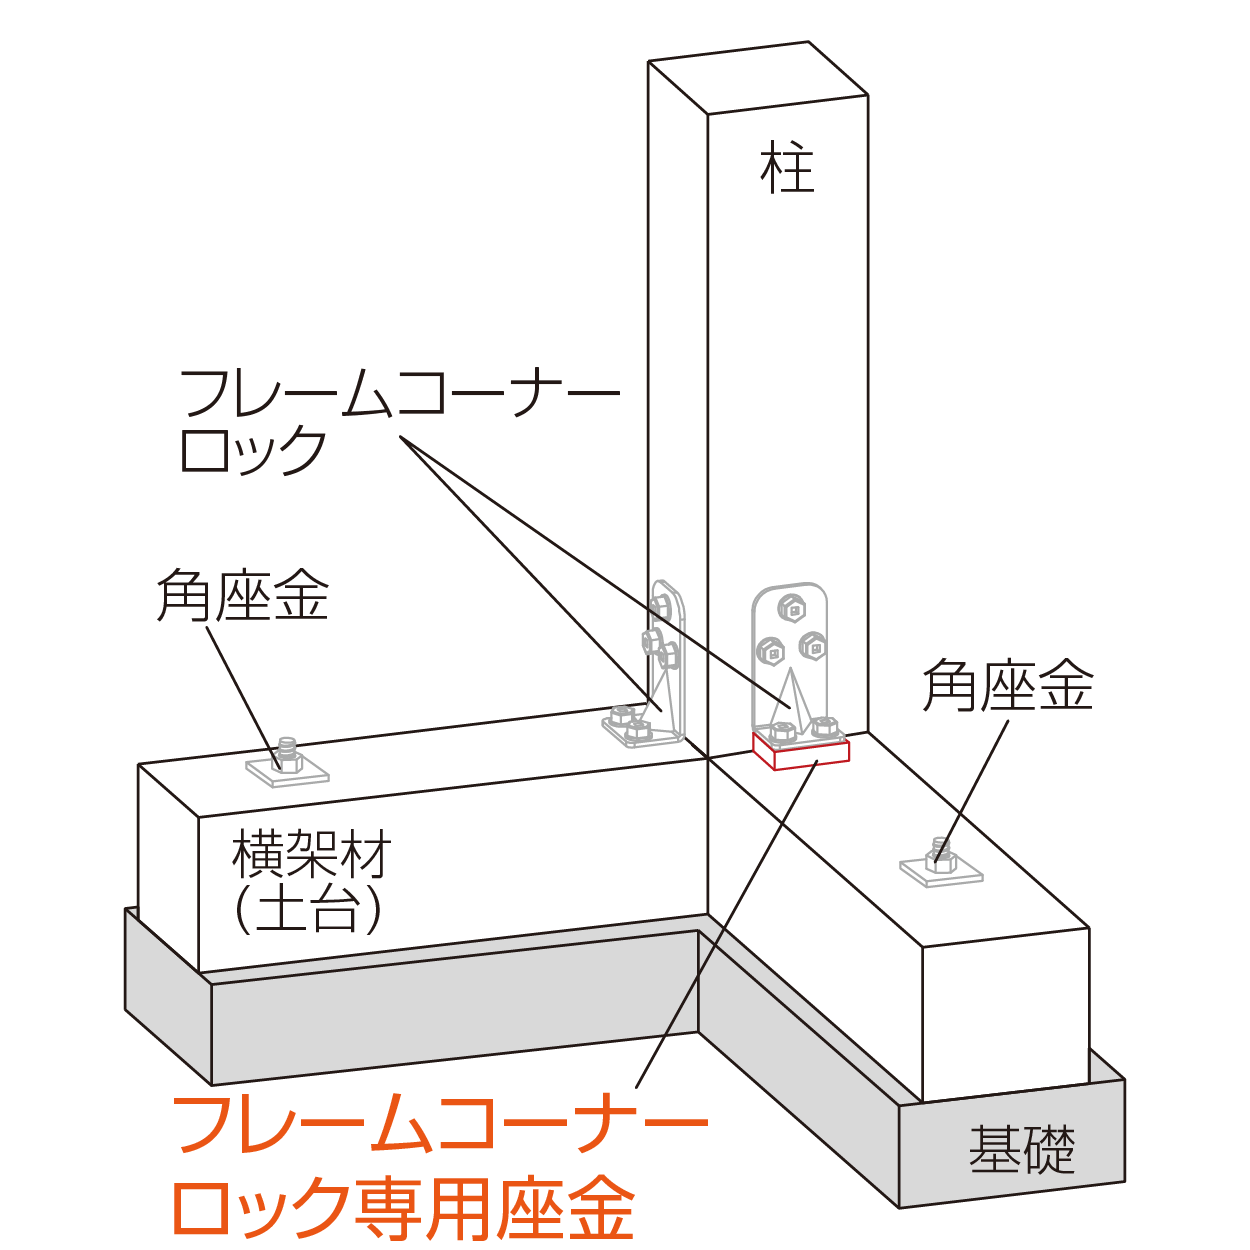 フレームコーナーロック専用座金 柱脚使用例（隅柱）